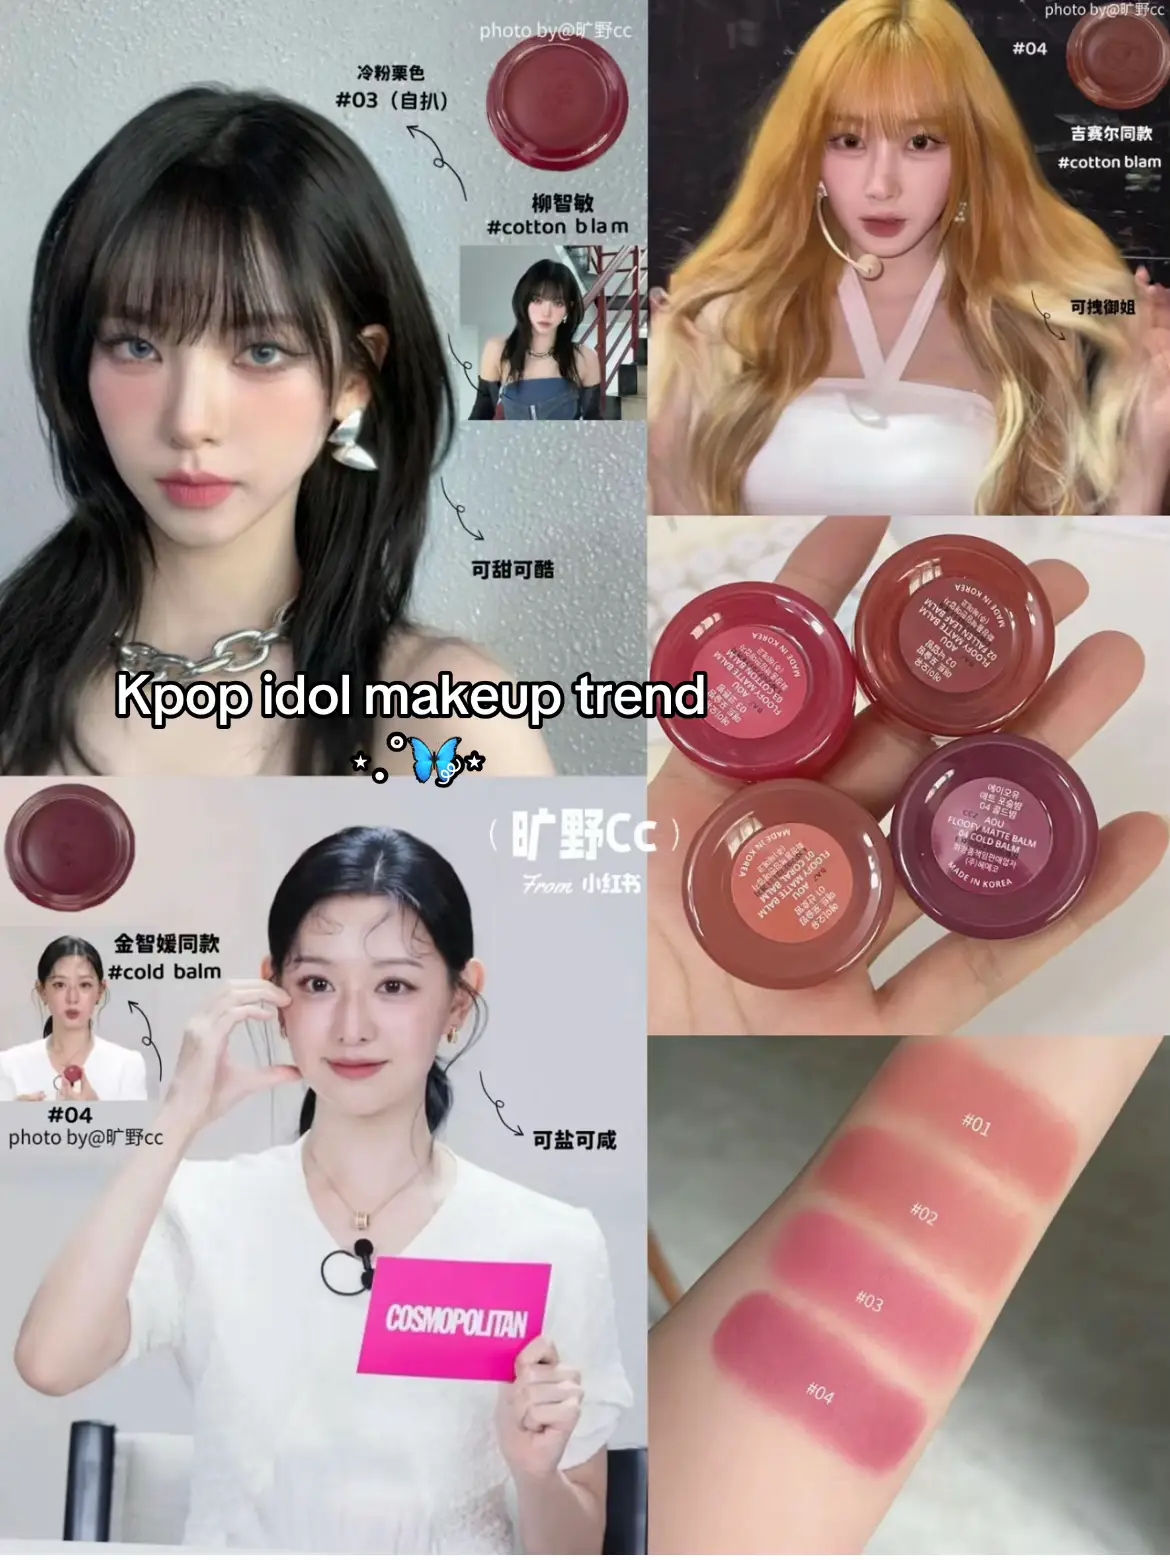 #kbeautymakeup #foryoupage #xh #trangdiem #congaihanquoc #koreamakeup #xuhuong #sonmoi #sonmoixinh #fyp #sonmoidep #makeup #kbeauty #xuhuongmakeup #cleanmakeup #lipstick #makeuplook 